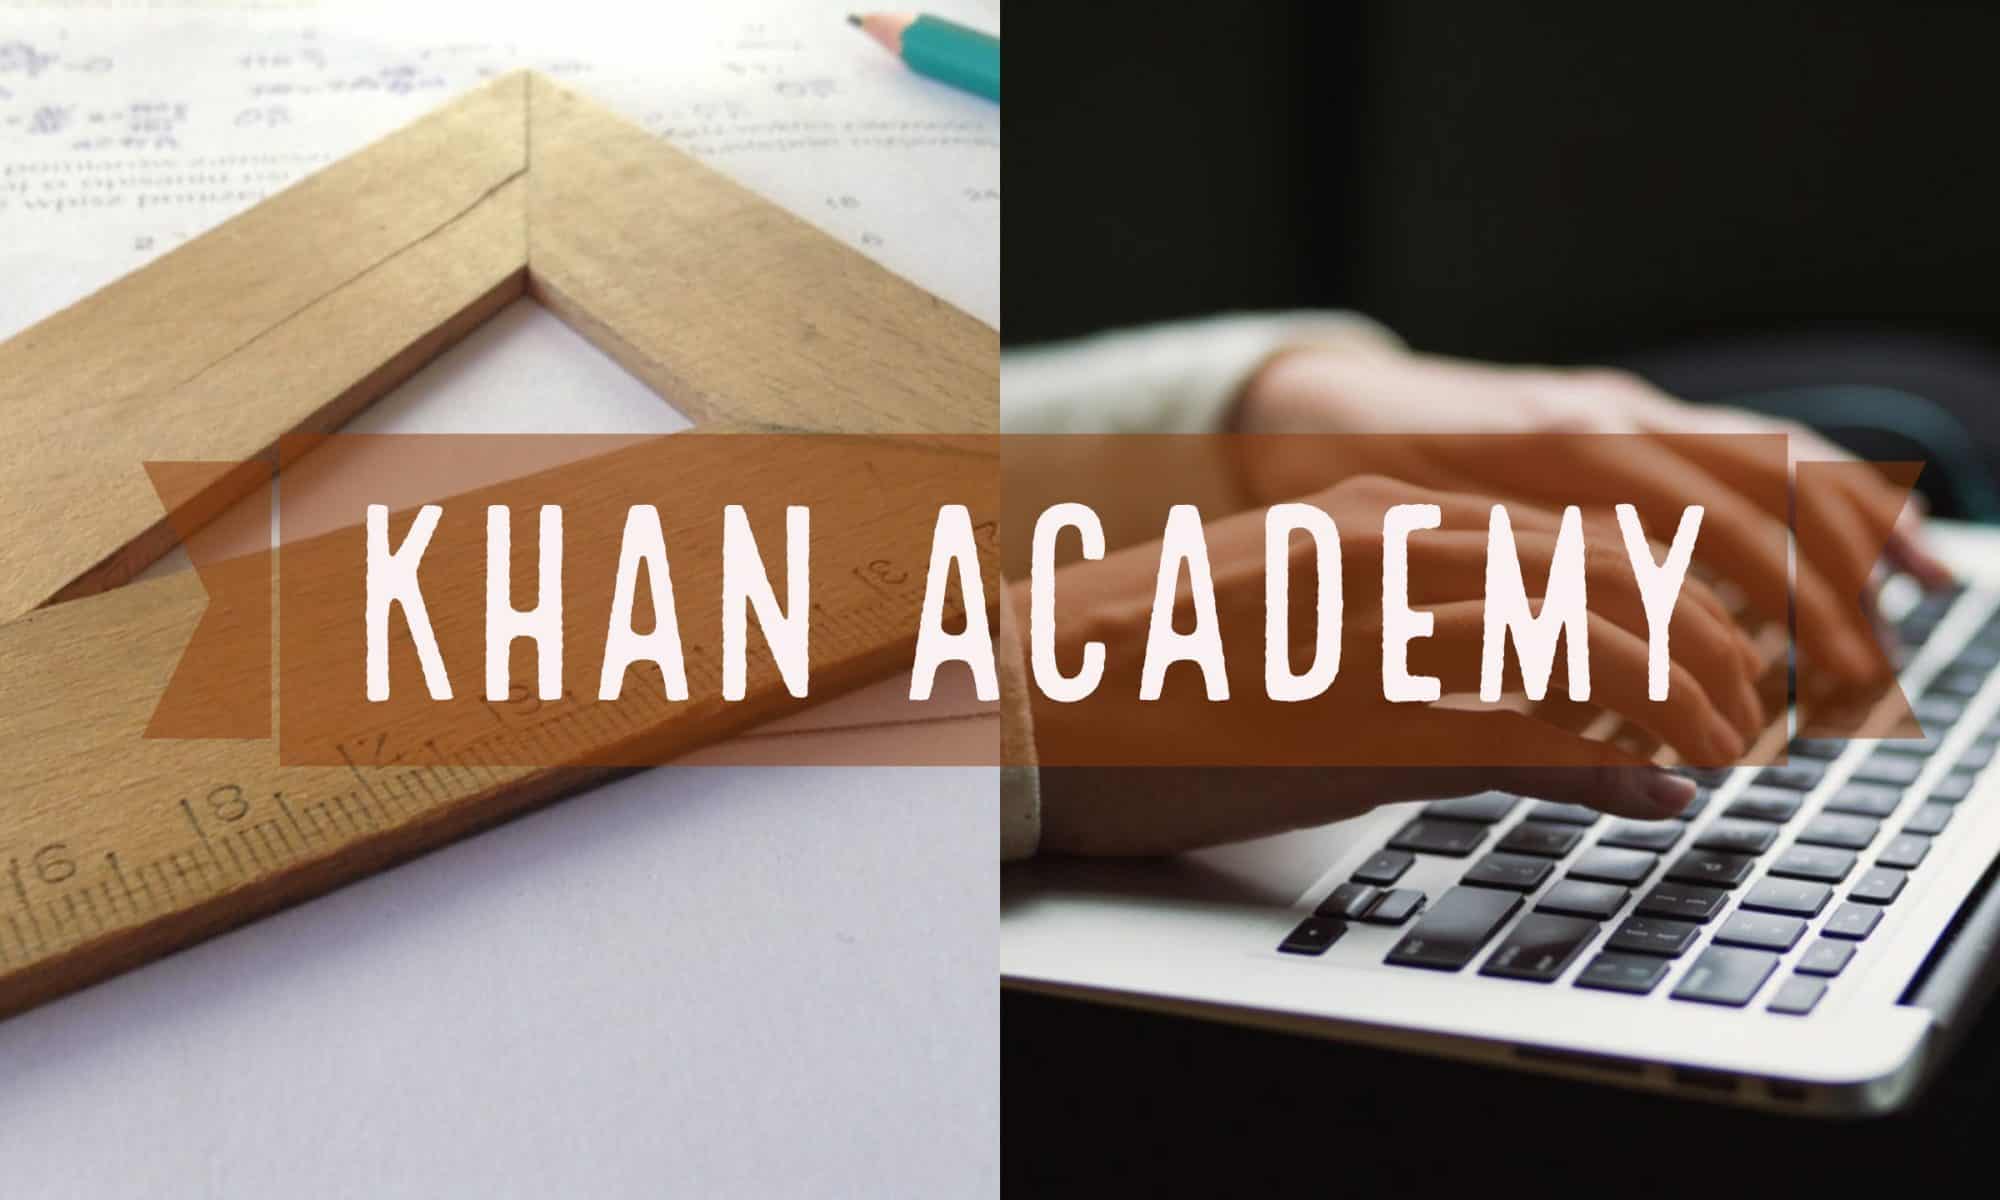 khan-academy-tutorial-edtech-methods